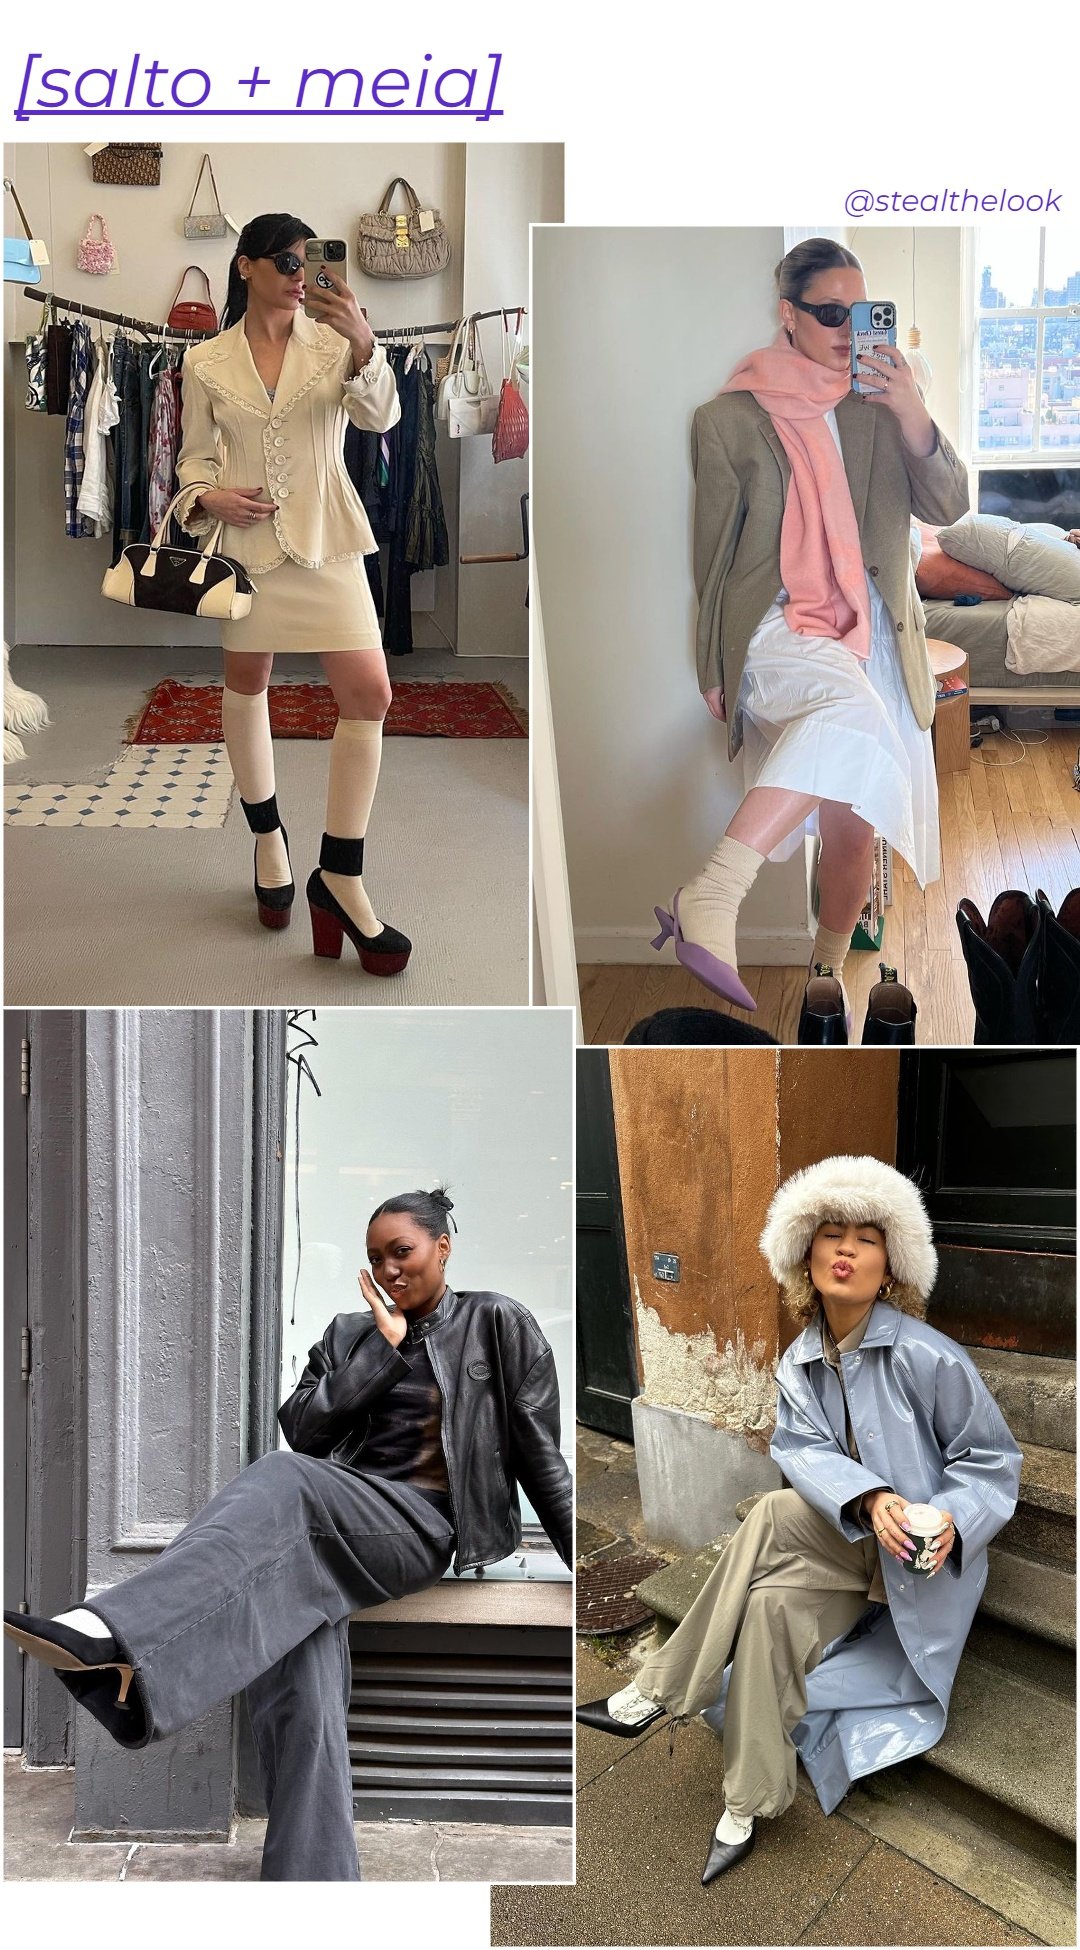 María Bernard, @goodwoodx, @chanelmckinsie e @elbavdh -     - tendência de moda - inverno - várias imagens de mulheres usando salto alto com meias - https://stealthelook.com.br